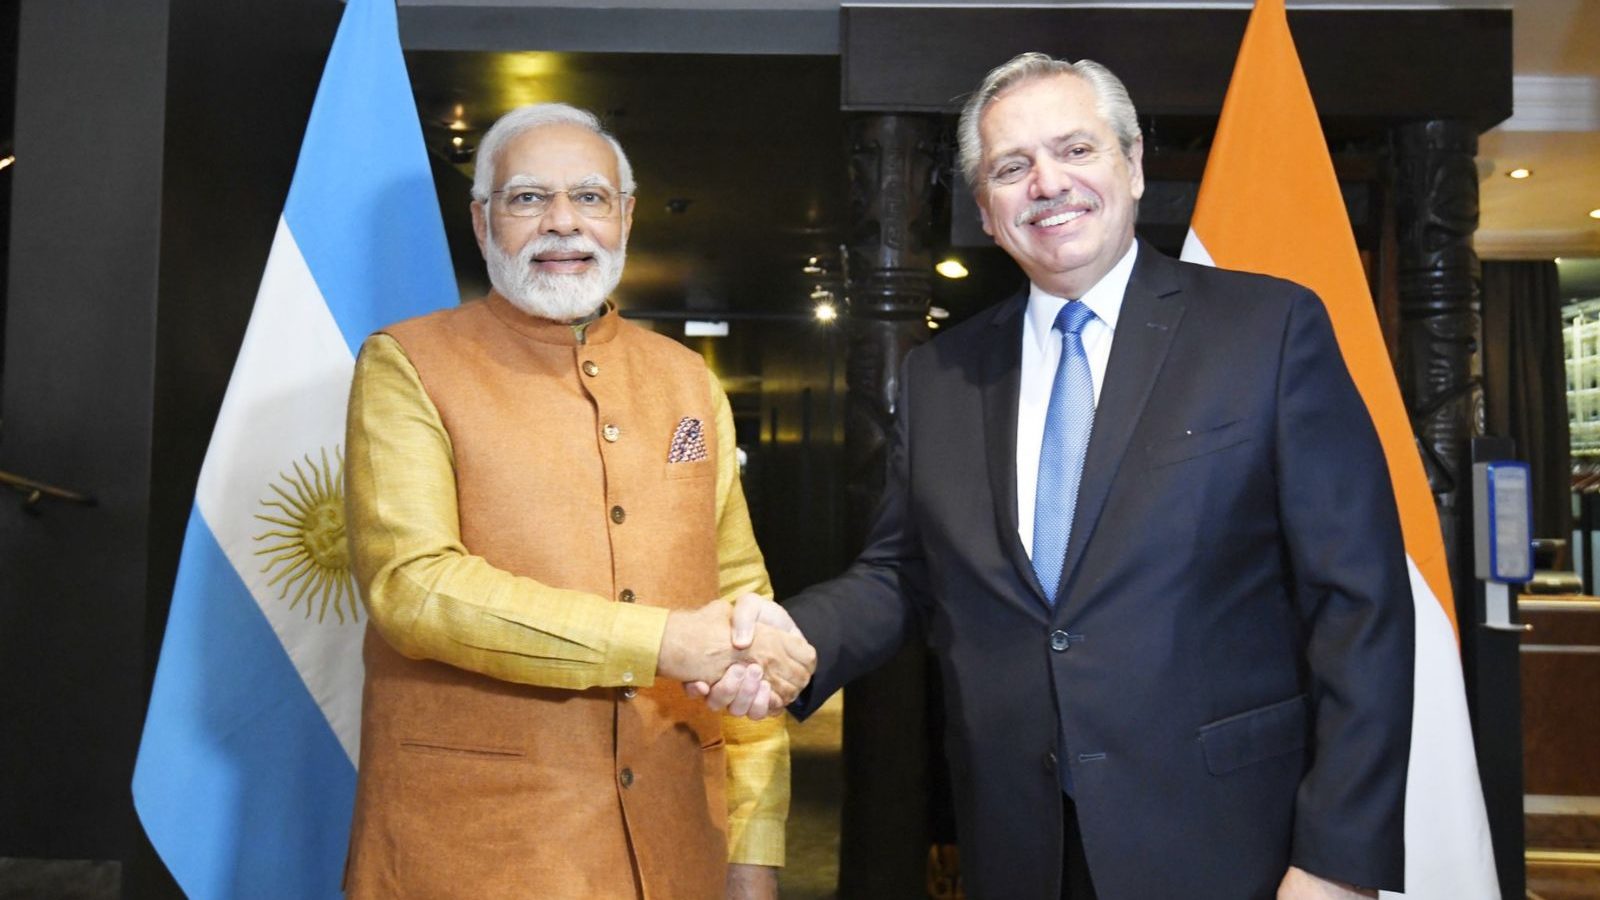 Modi hielt das erste bilaterale Treffen der G7 mit dem argentinischen Präsidenten Fernandes ab.